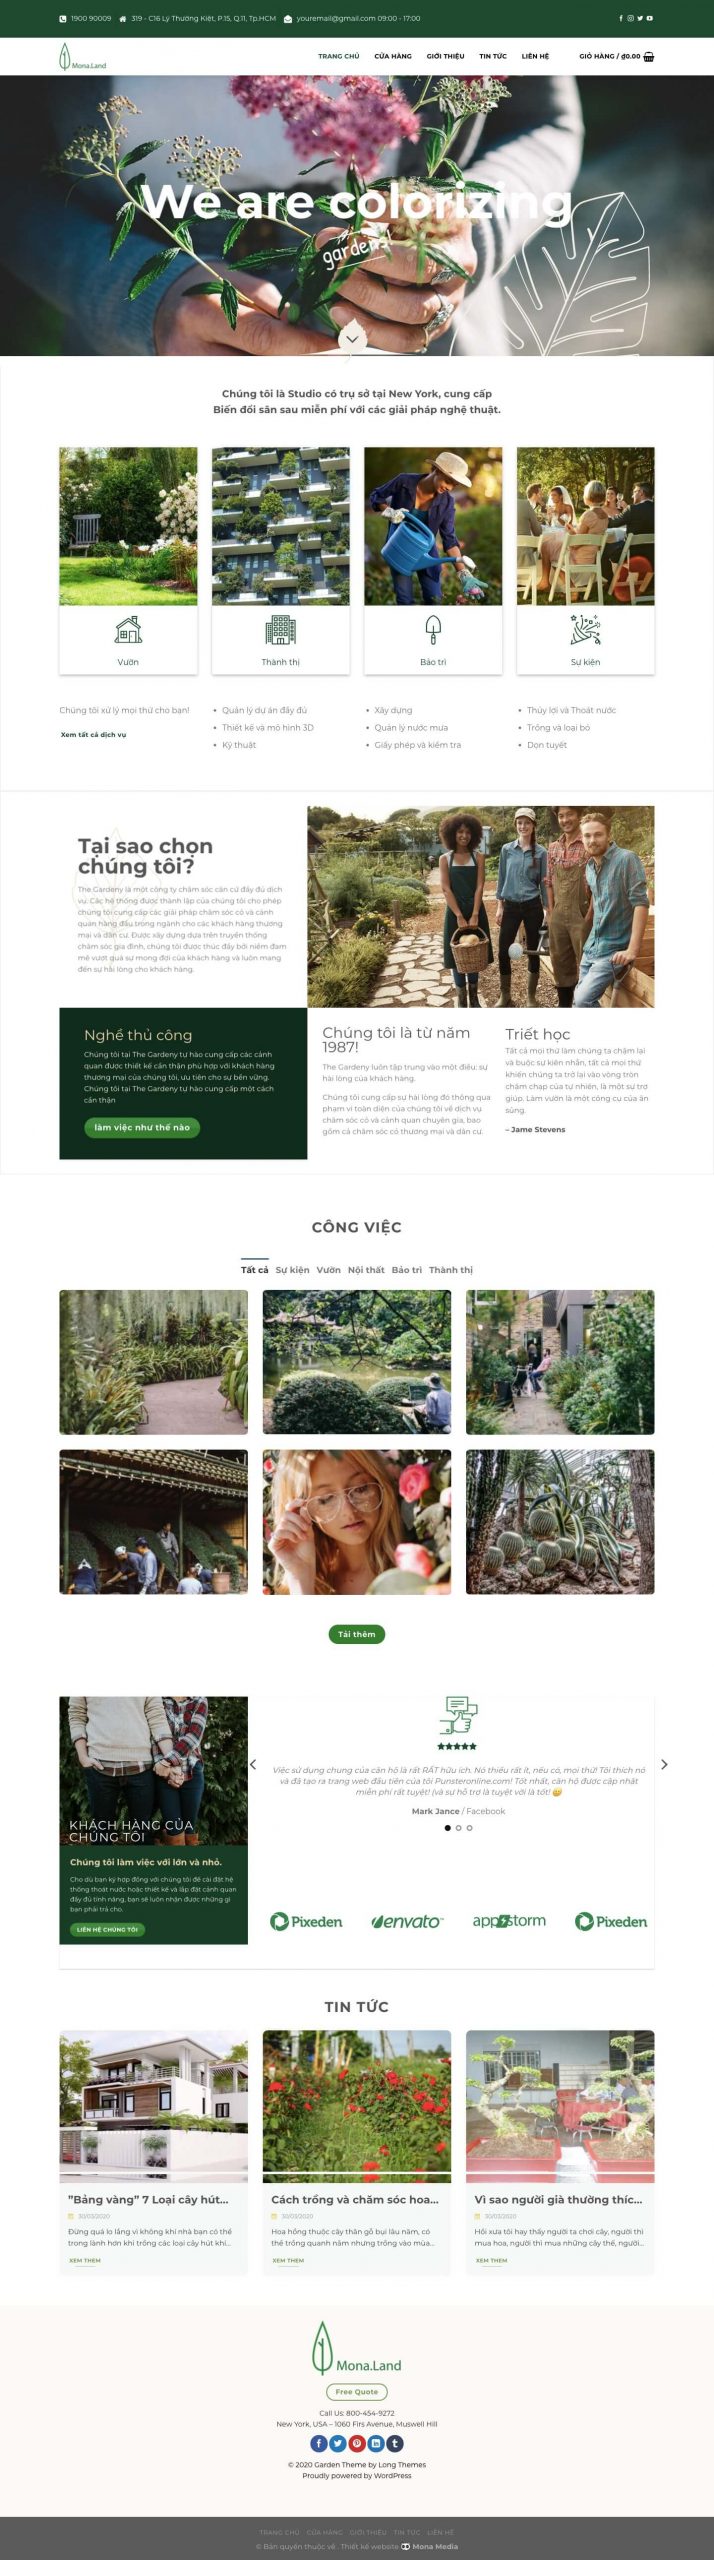 Mẫu Website Giới Thiệu Dịch Vụ Làm Vườn, Cây Xanh